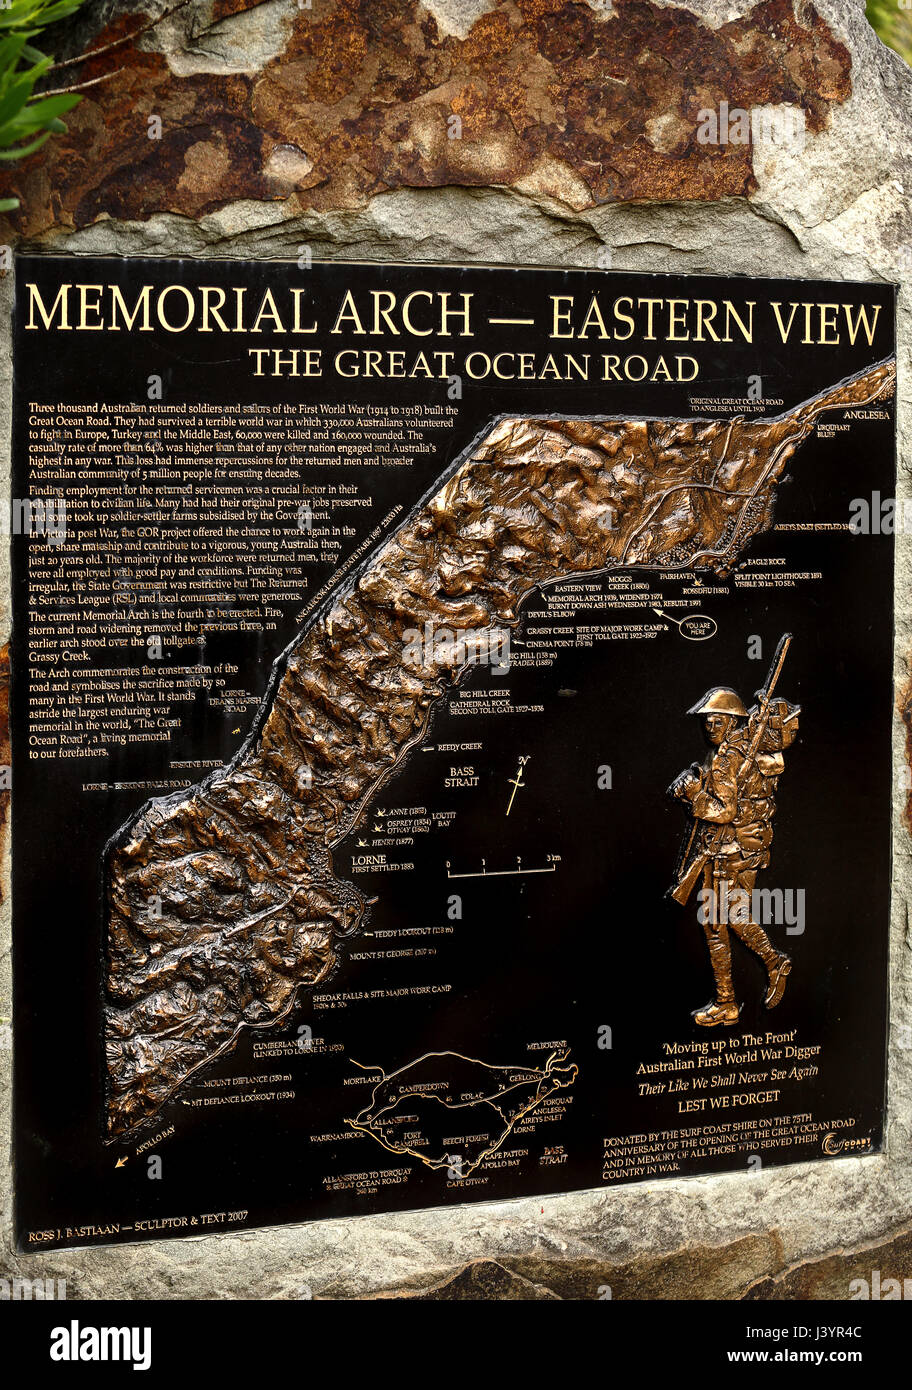 Diese Plakette Memorial Arch-Ost-Ansicht mit dem Titel ordnet die Strecke von der Great Ocean Road. Siehe Beschreibung. Stockfoto